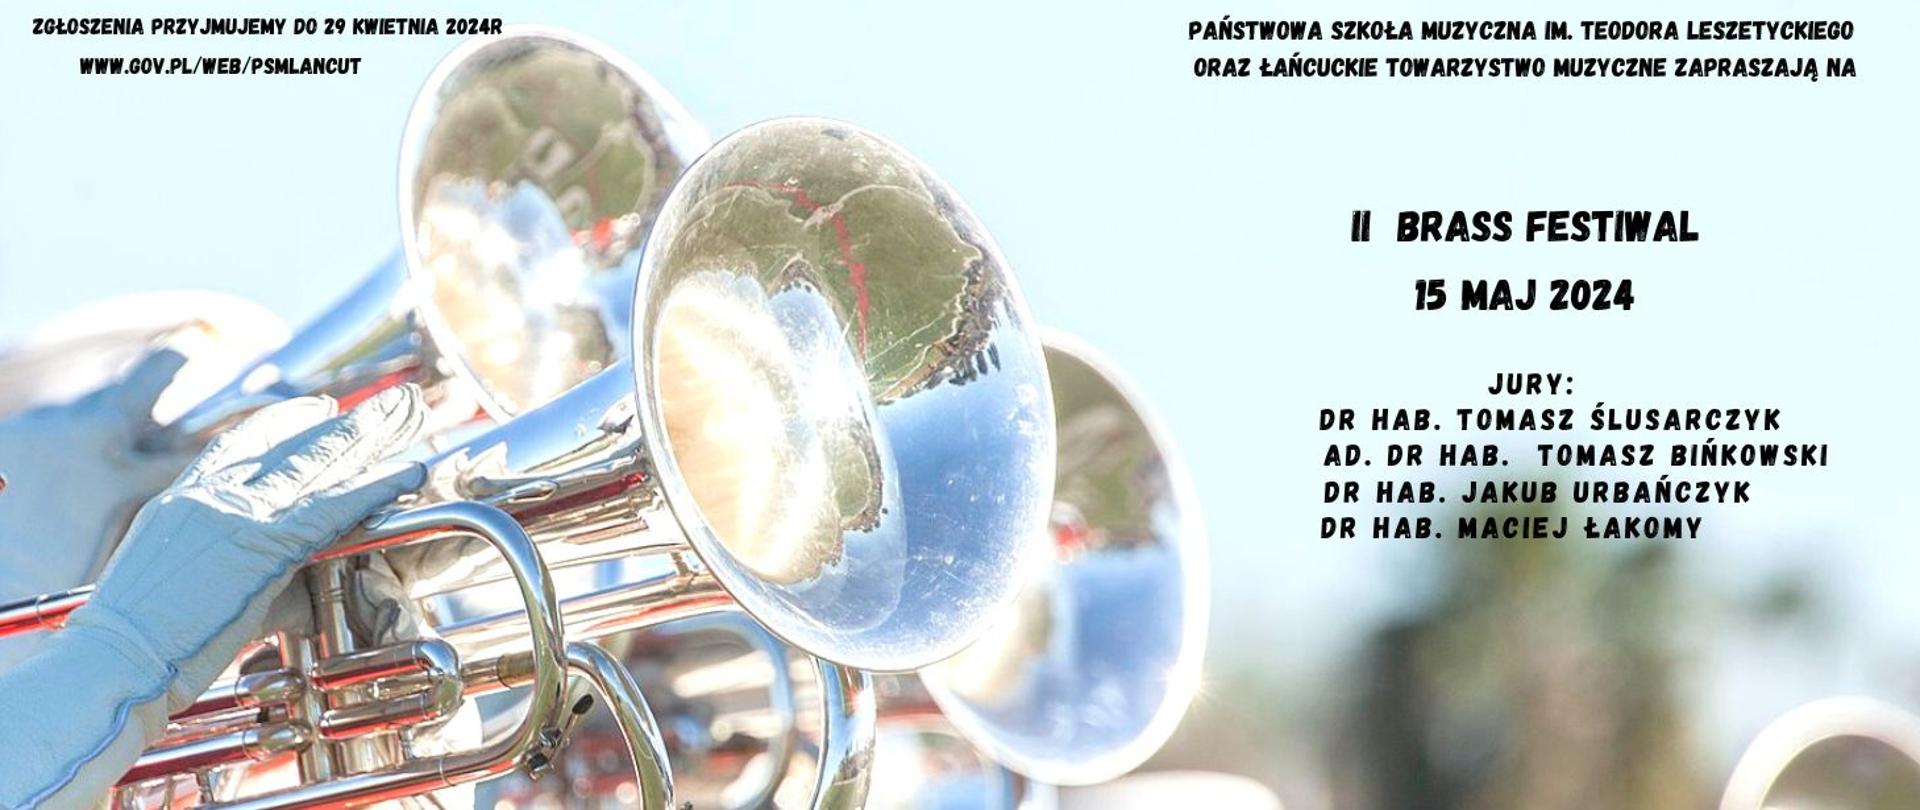 Plakat na II Brass Festiwal w Łańcucie - przedstawia trąbki i info o konkursie 15 maja 2024